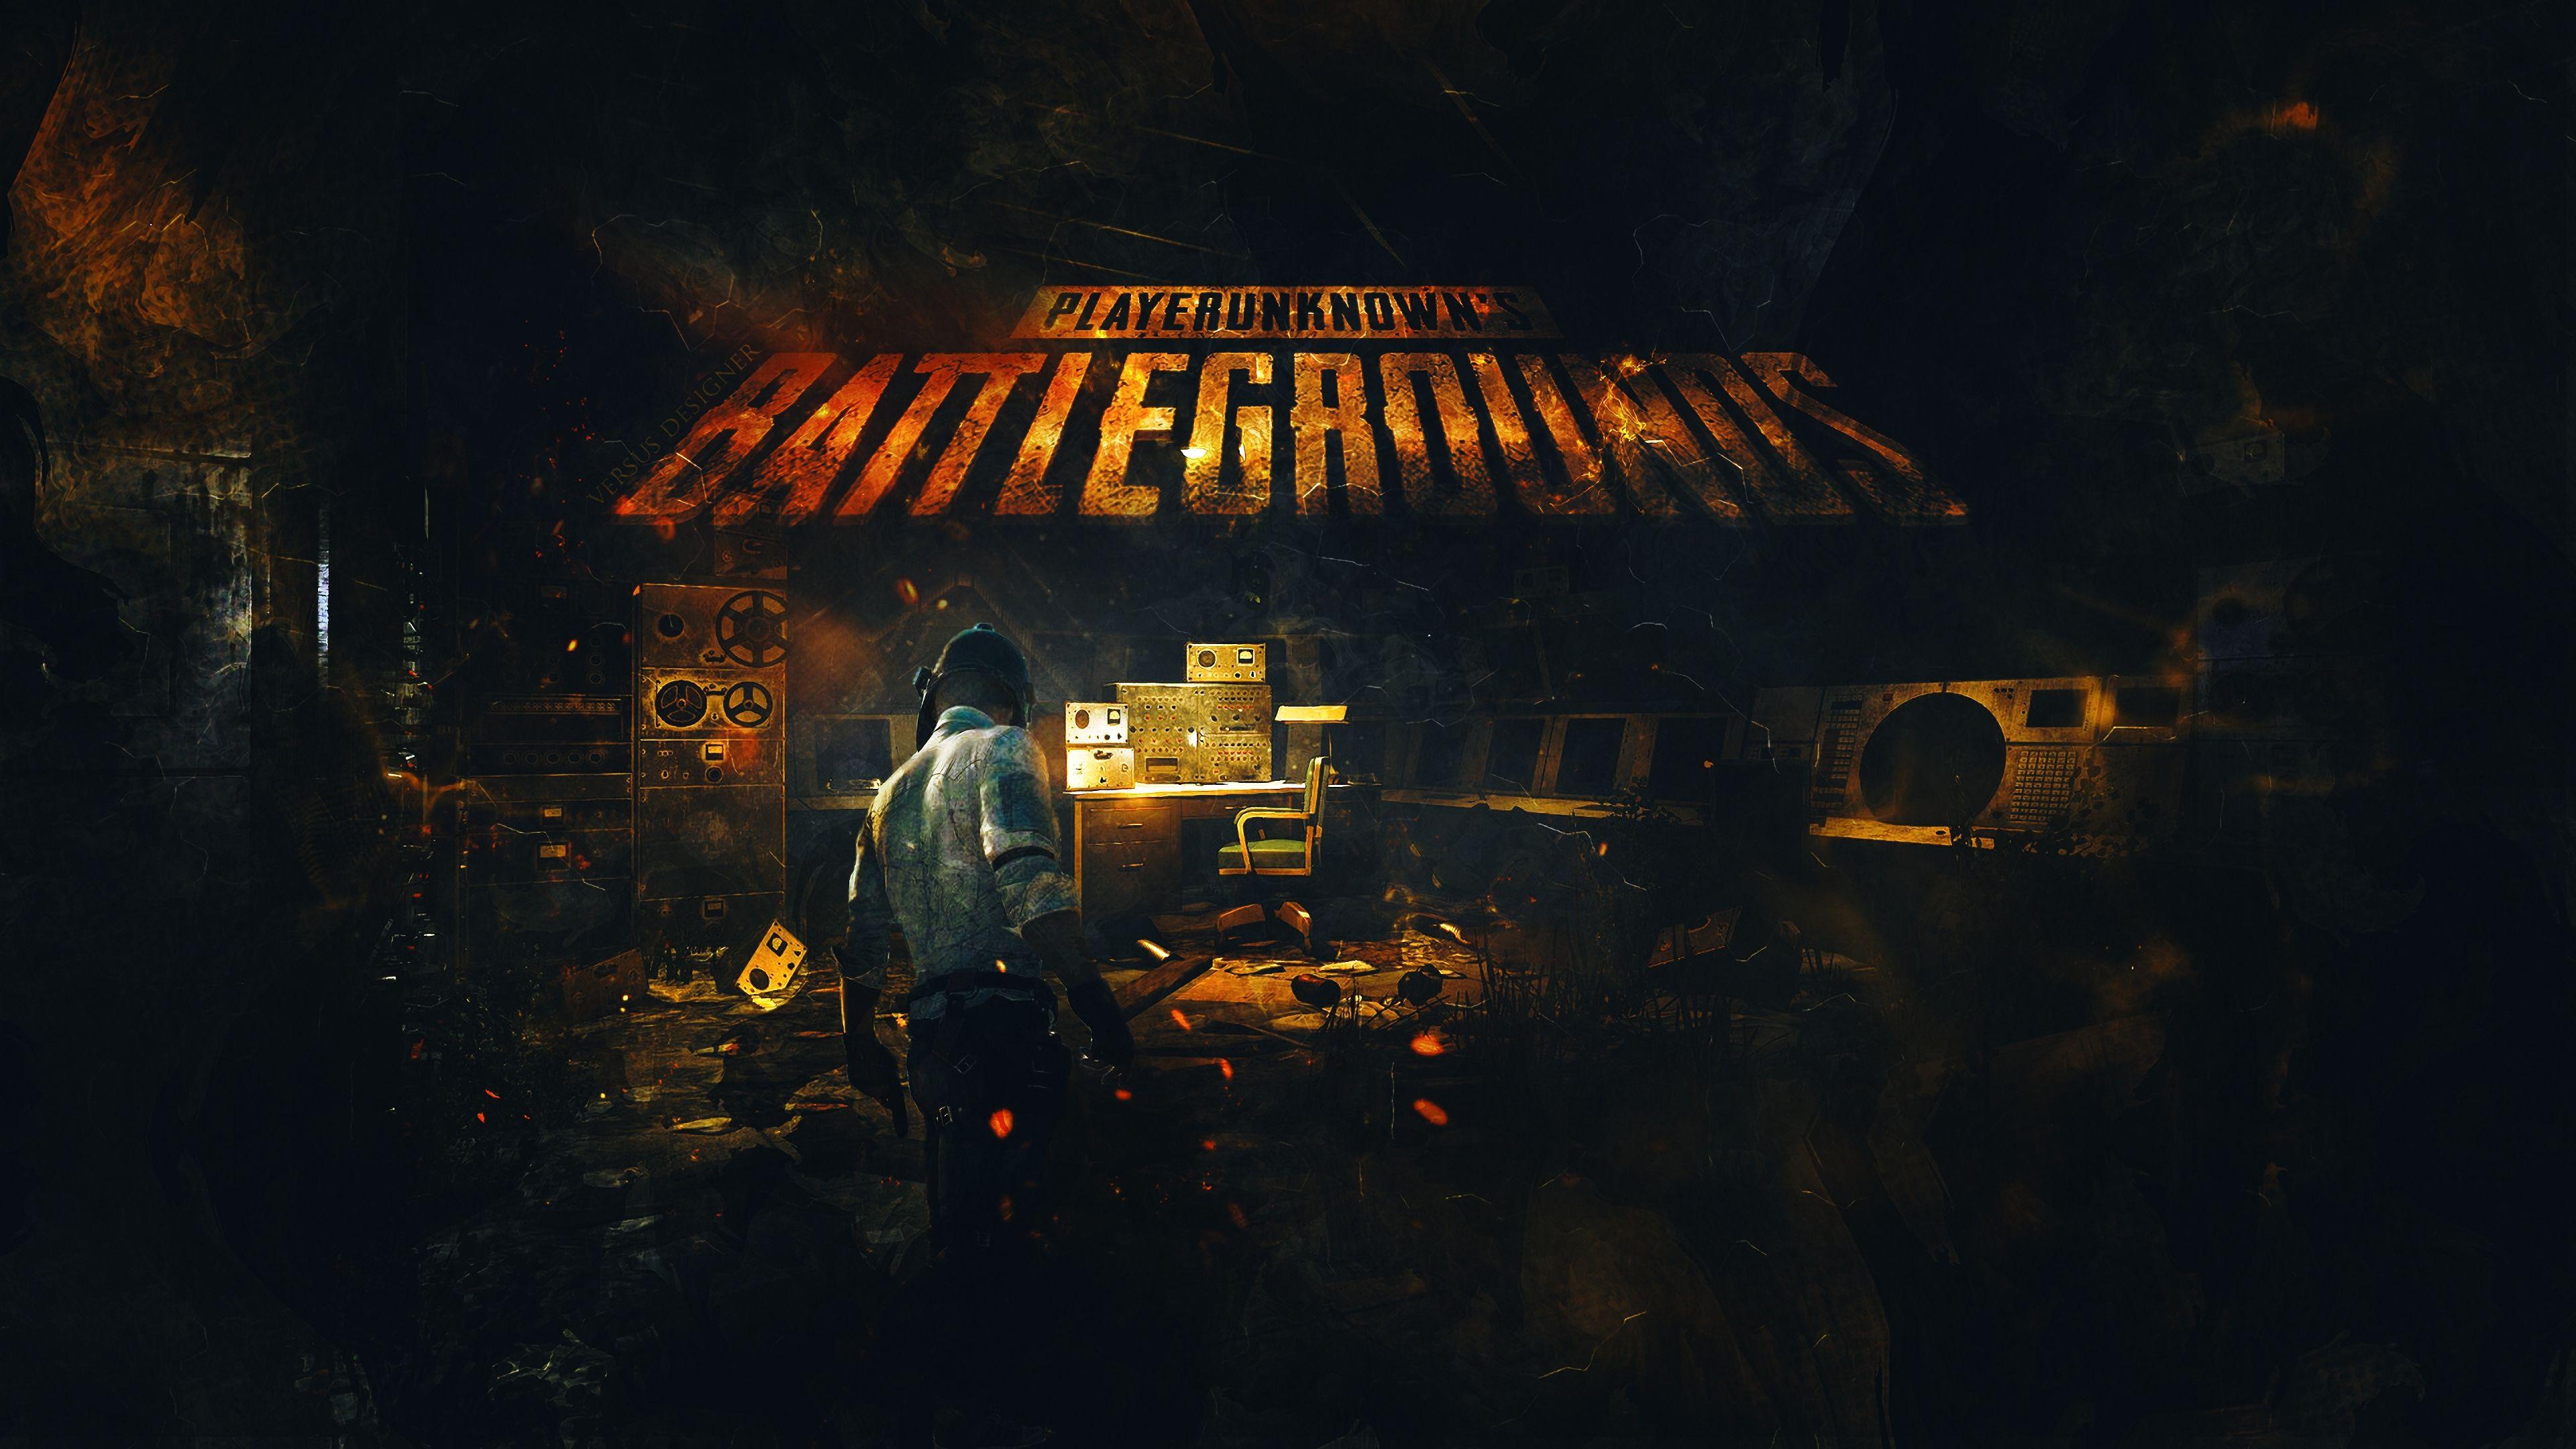 Playerunknowns Battlegrounds 4k Art, HD Games, 4k Wallpaper, Image